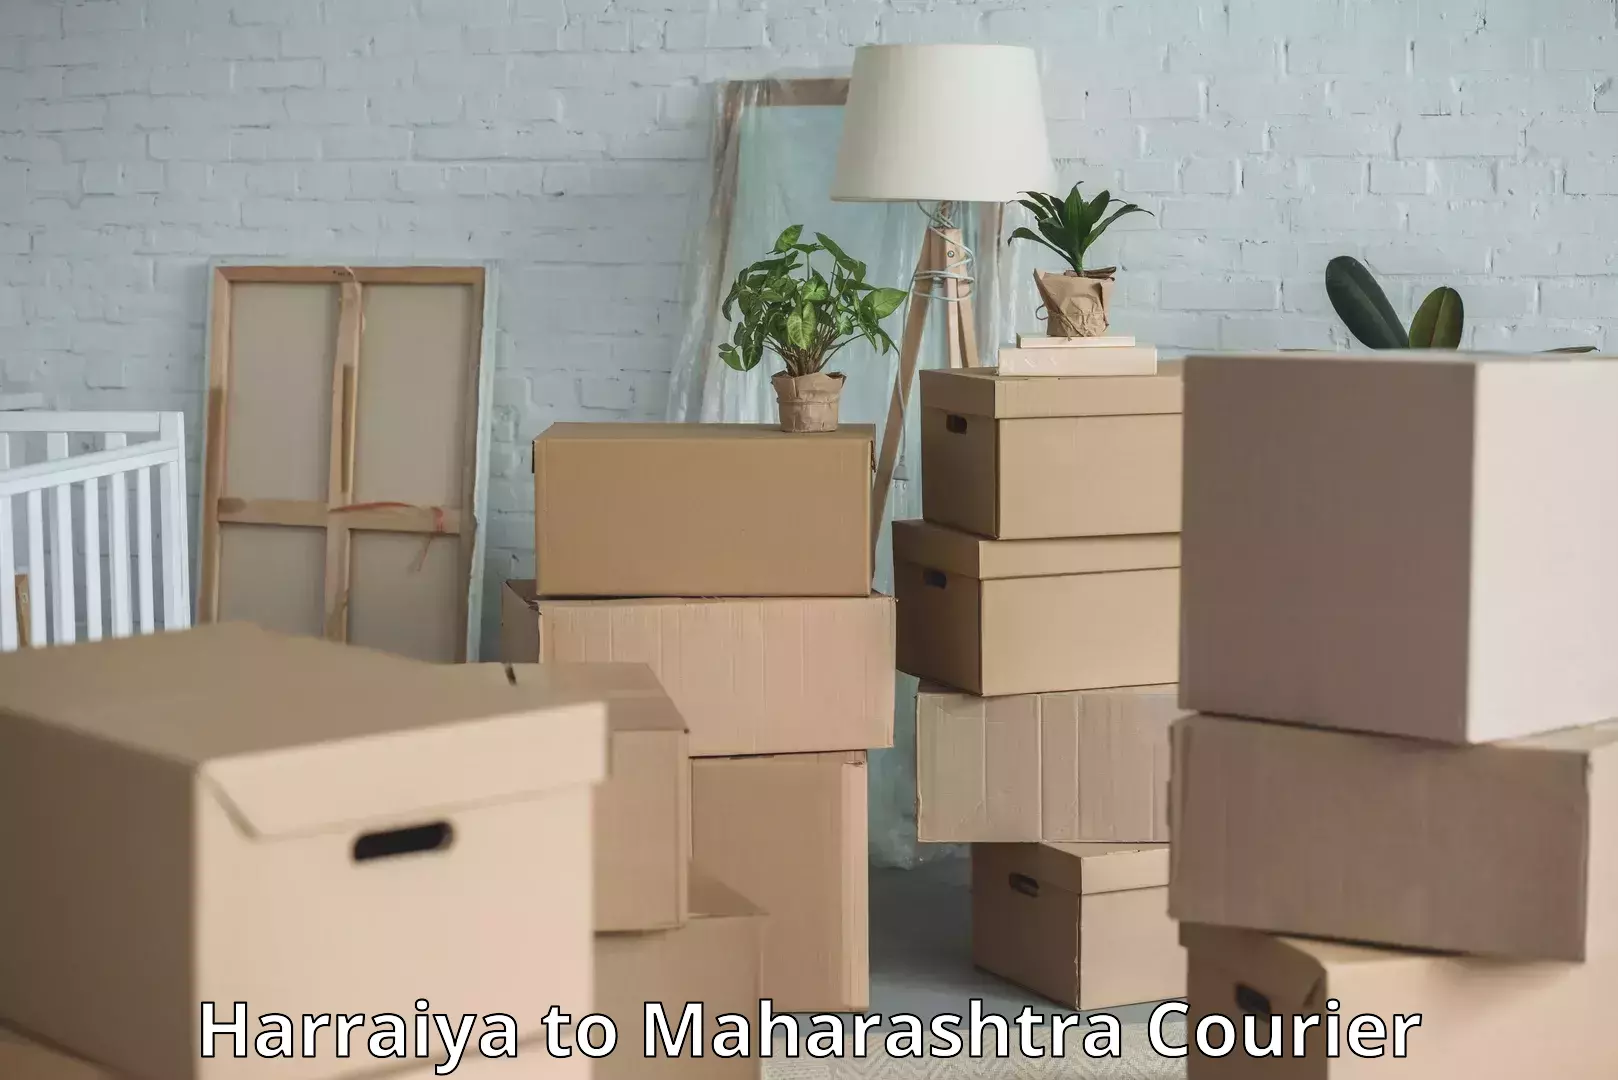 Doorstep luggage collection in Harraiya to Maharashtra